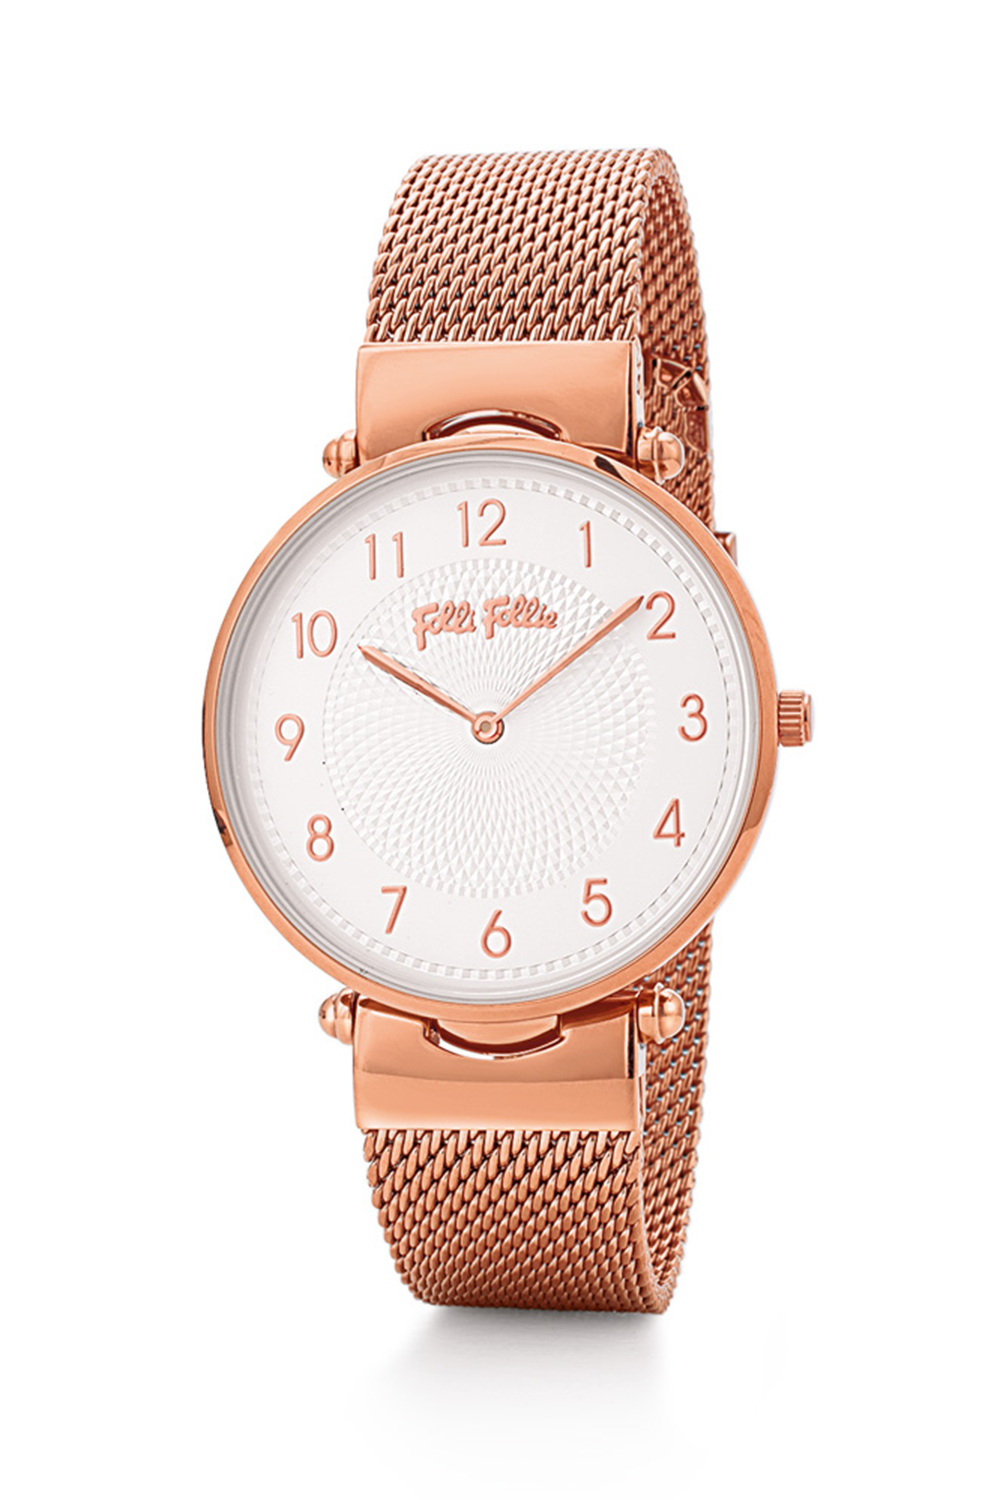 FOLLI FOLLIE – Γυναικείο ρολόι με μπρασελέ FOLLI FOLLIE LADY CLUB ροζ χρυσό WF17R015BSS-XX